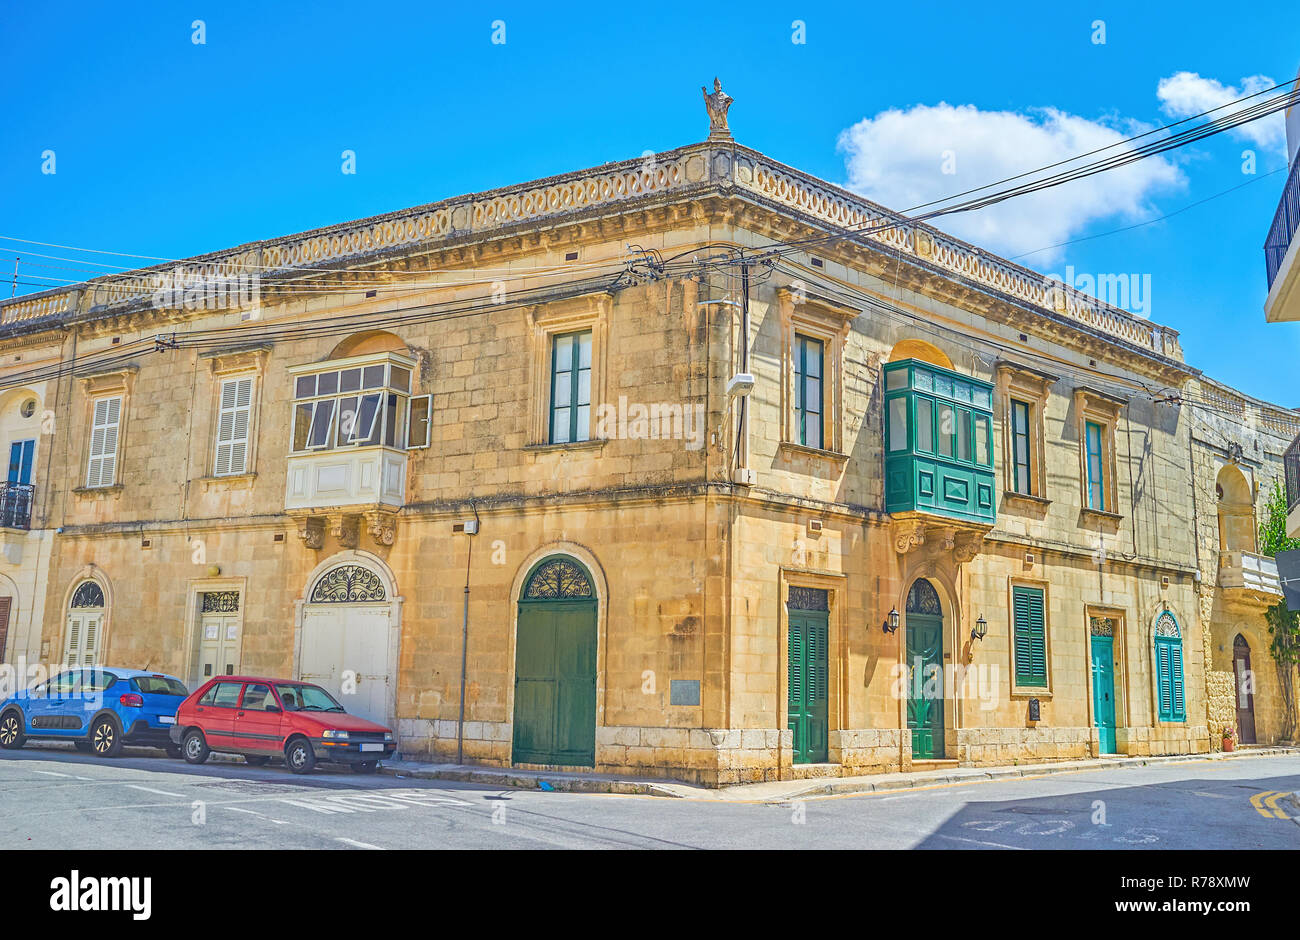 Il vecchio edificio Maltese con i tipici balconi e la scultura di un santo su un angolo del tetto, città mista, Malta Foto Stock